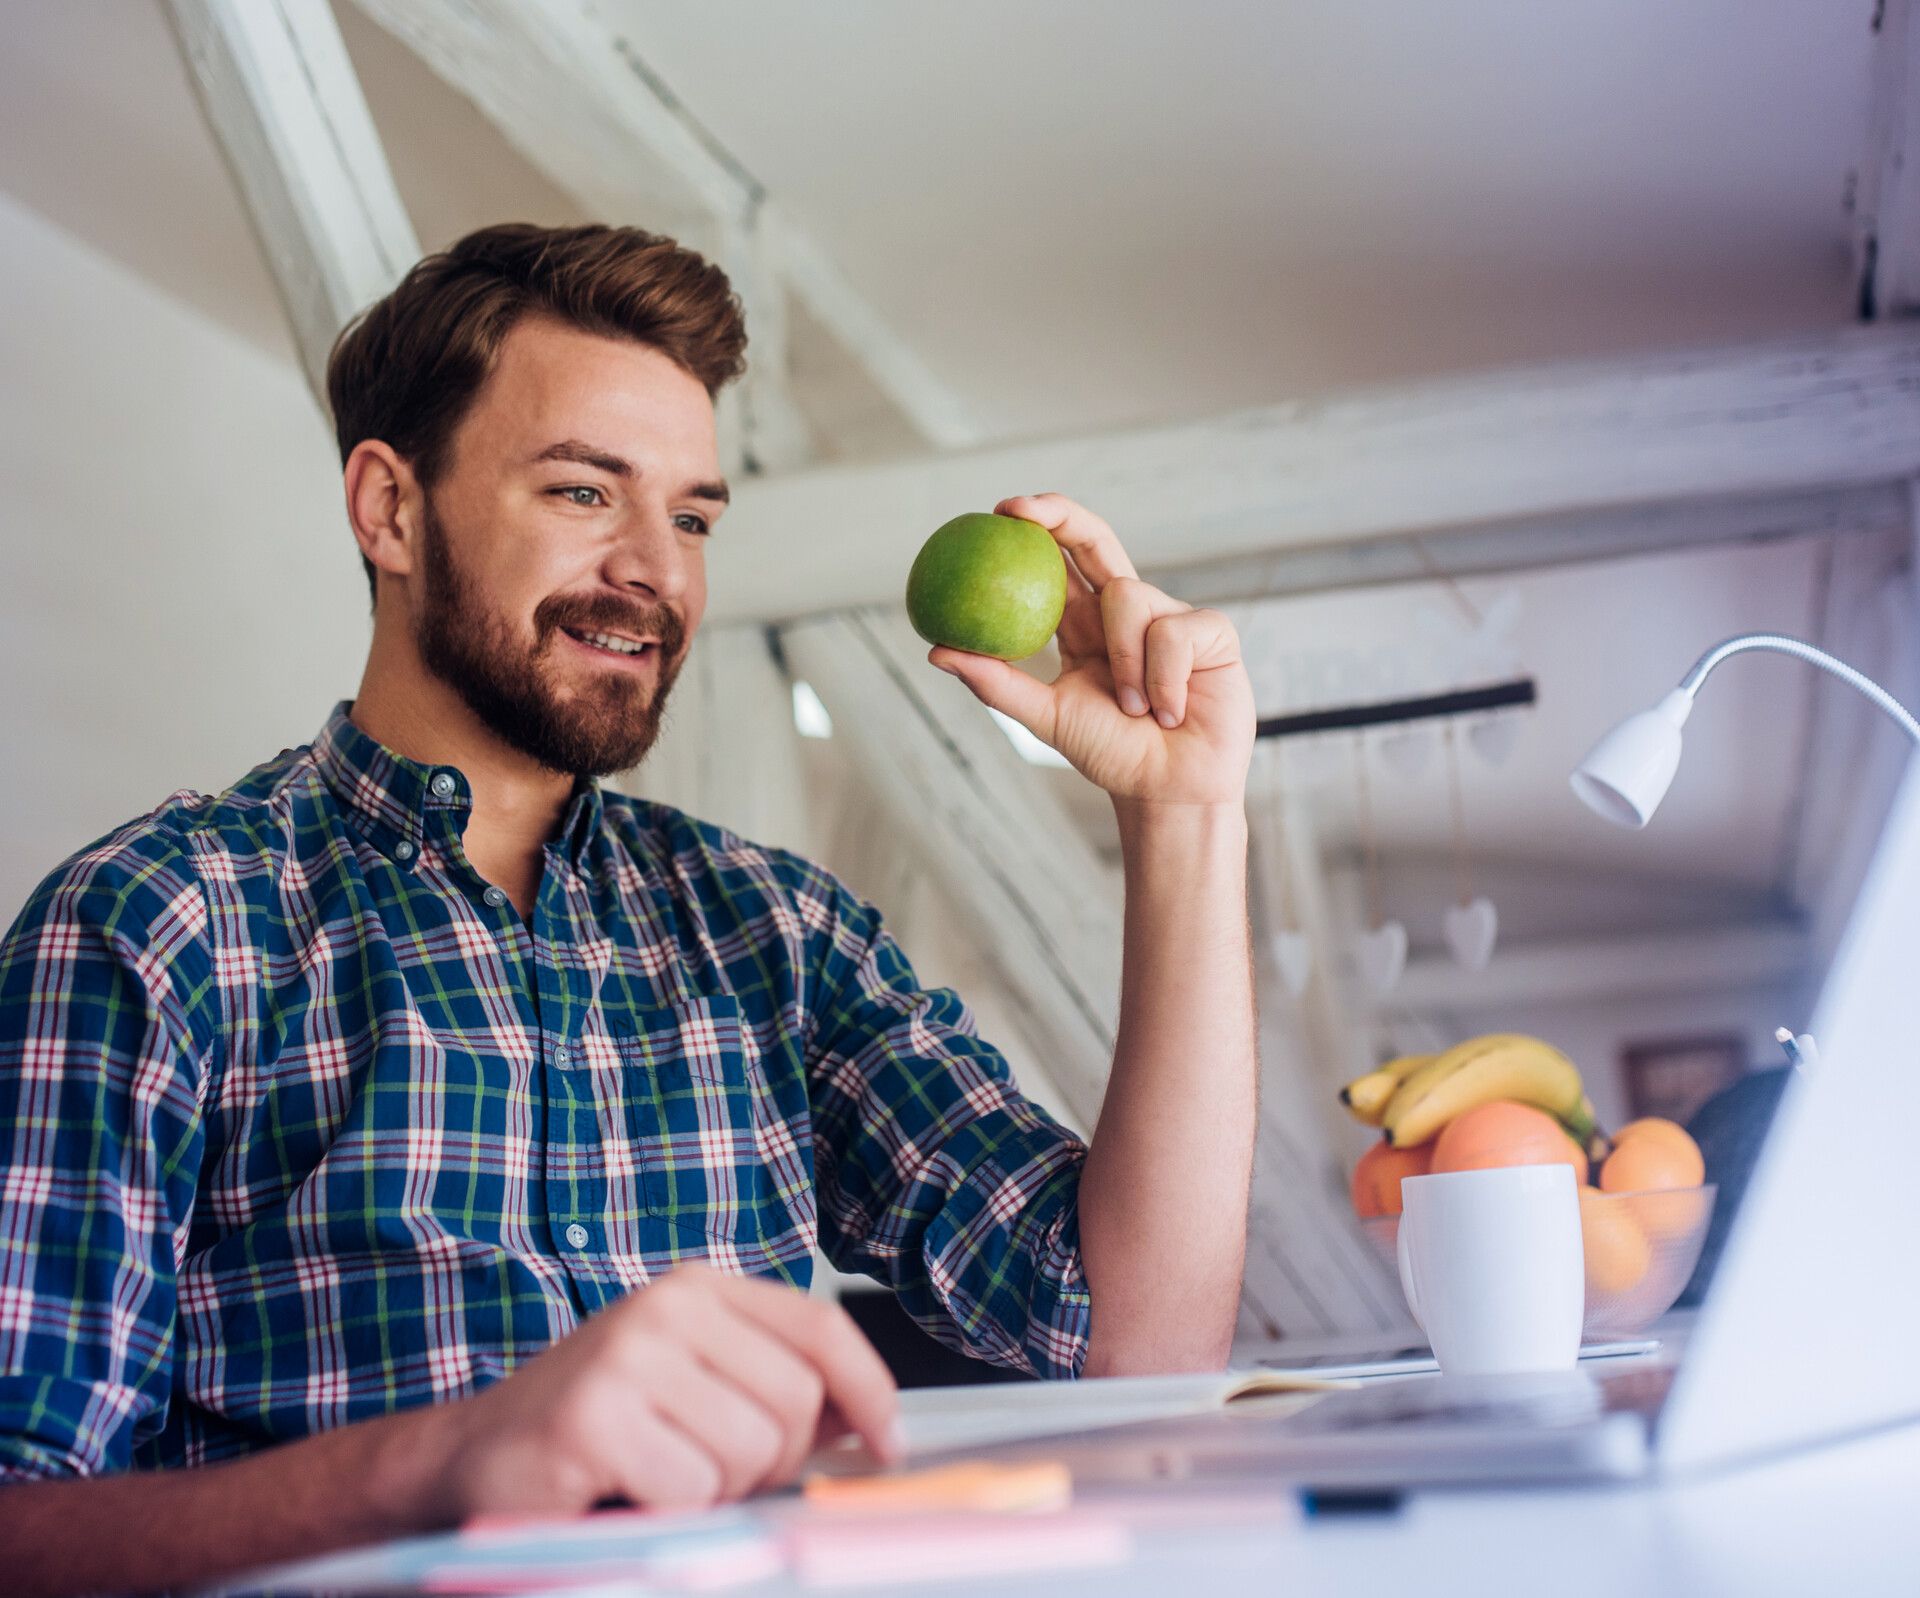 Mann am Laptop mit Apfel in Hand